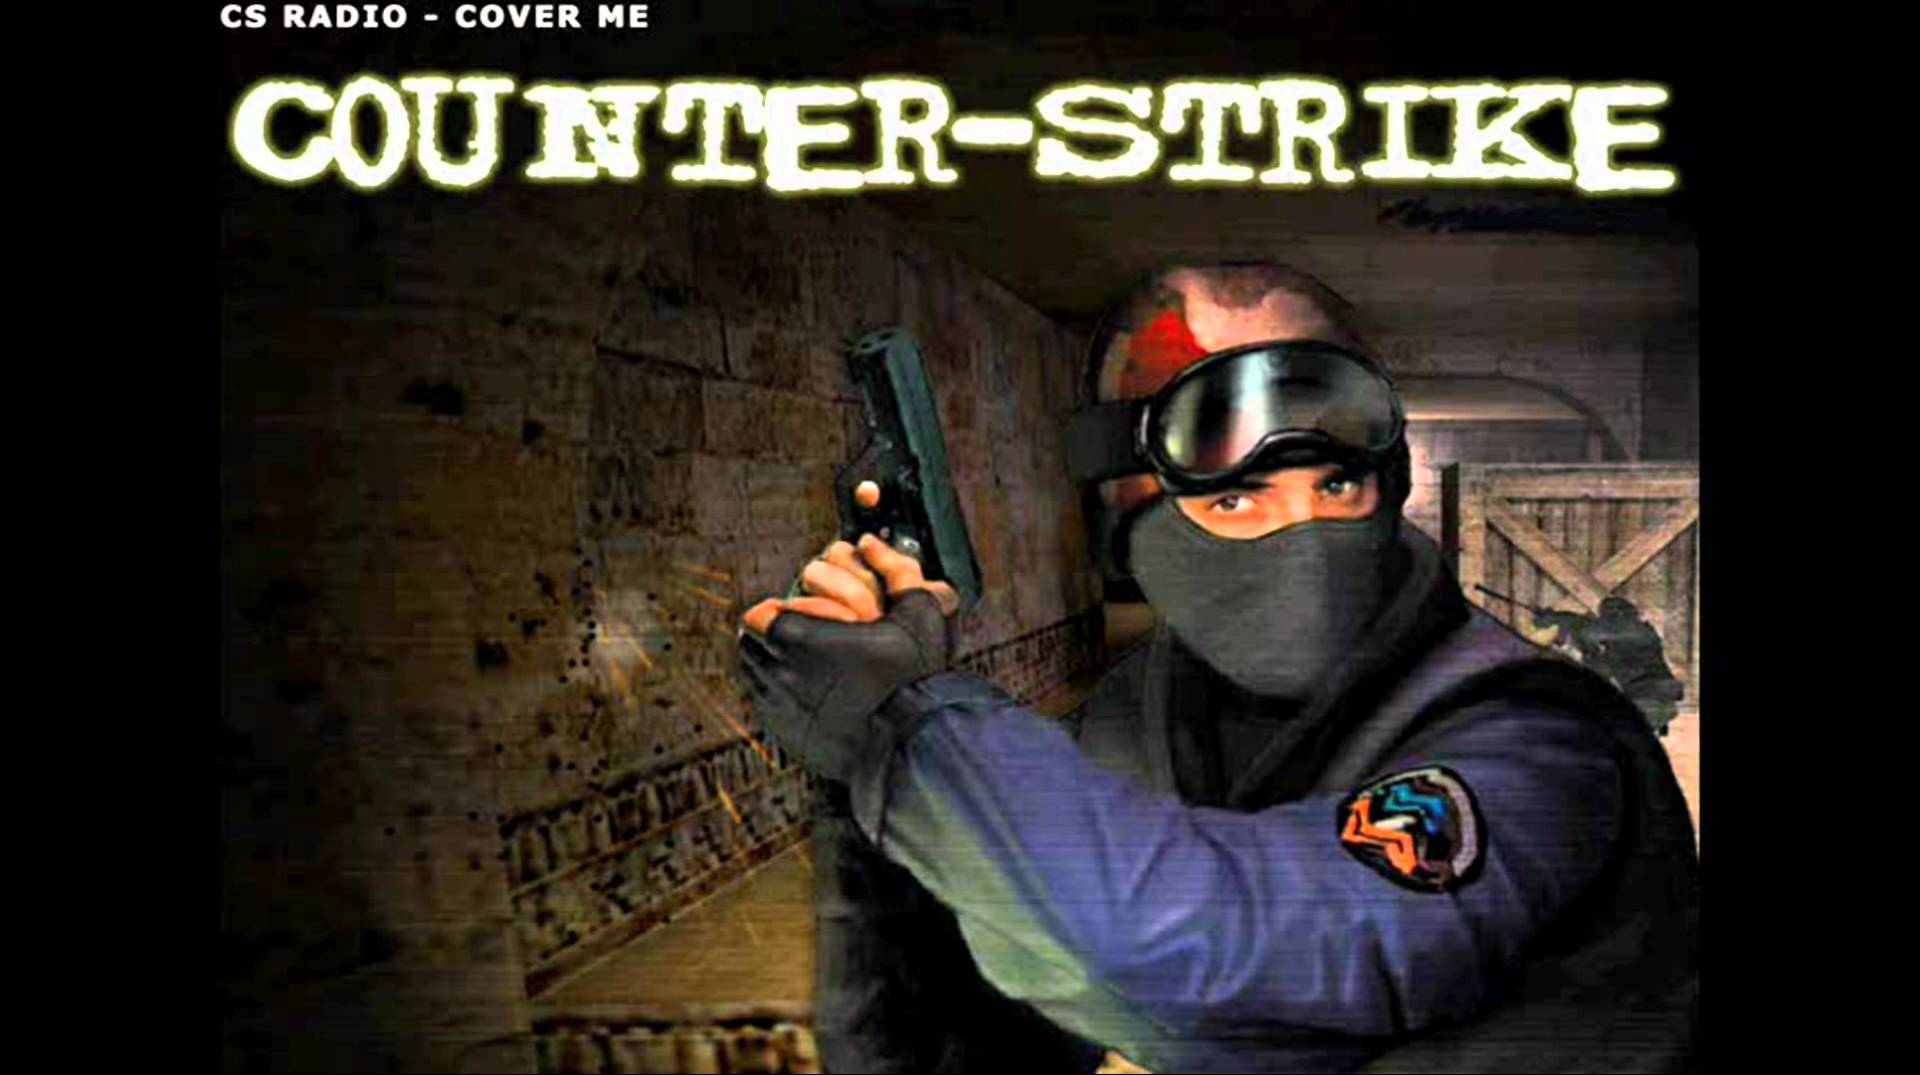 counter strike jingle - cs radio-cover me - YouTube